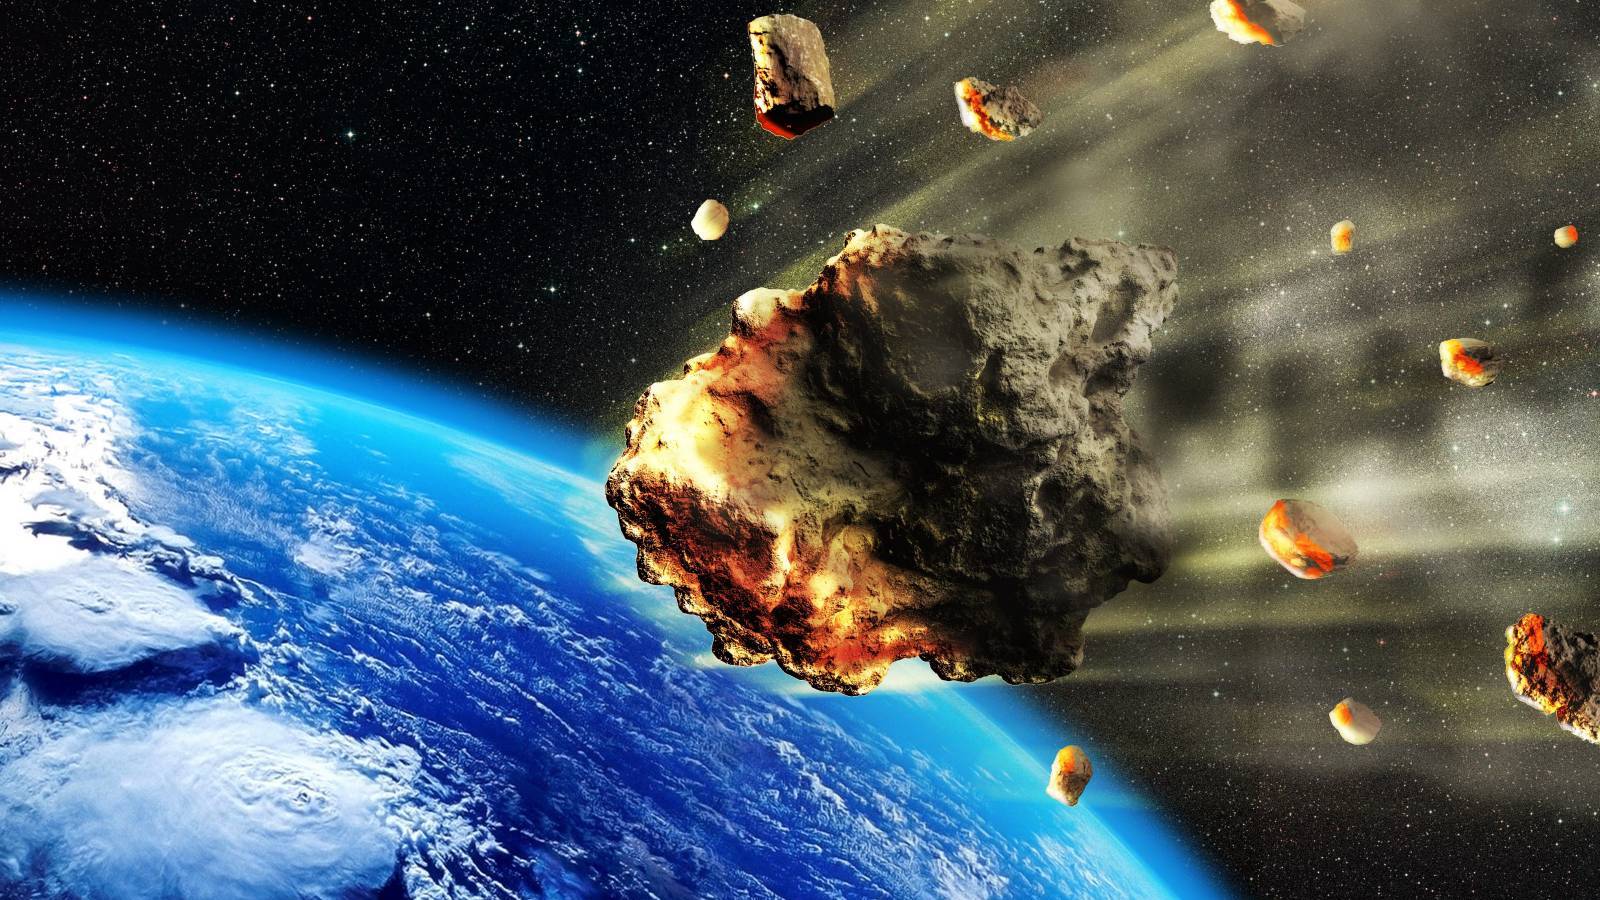 NASA OSTRZEGA, że asteroidy zmierzają teraz w kierunku Ziemi